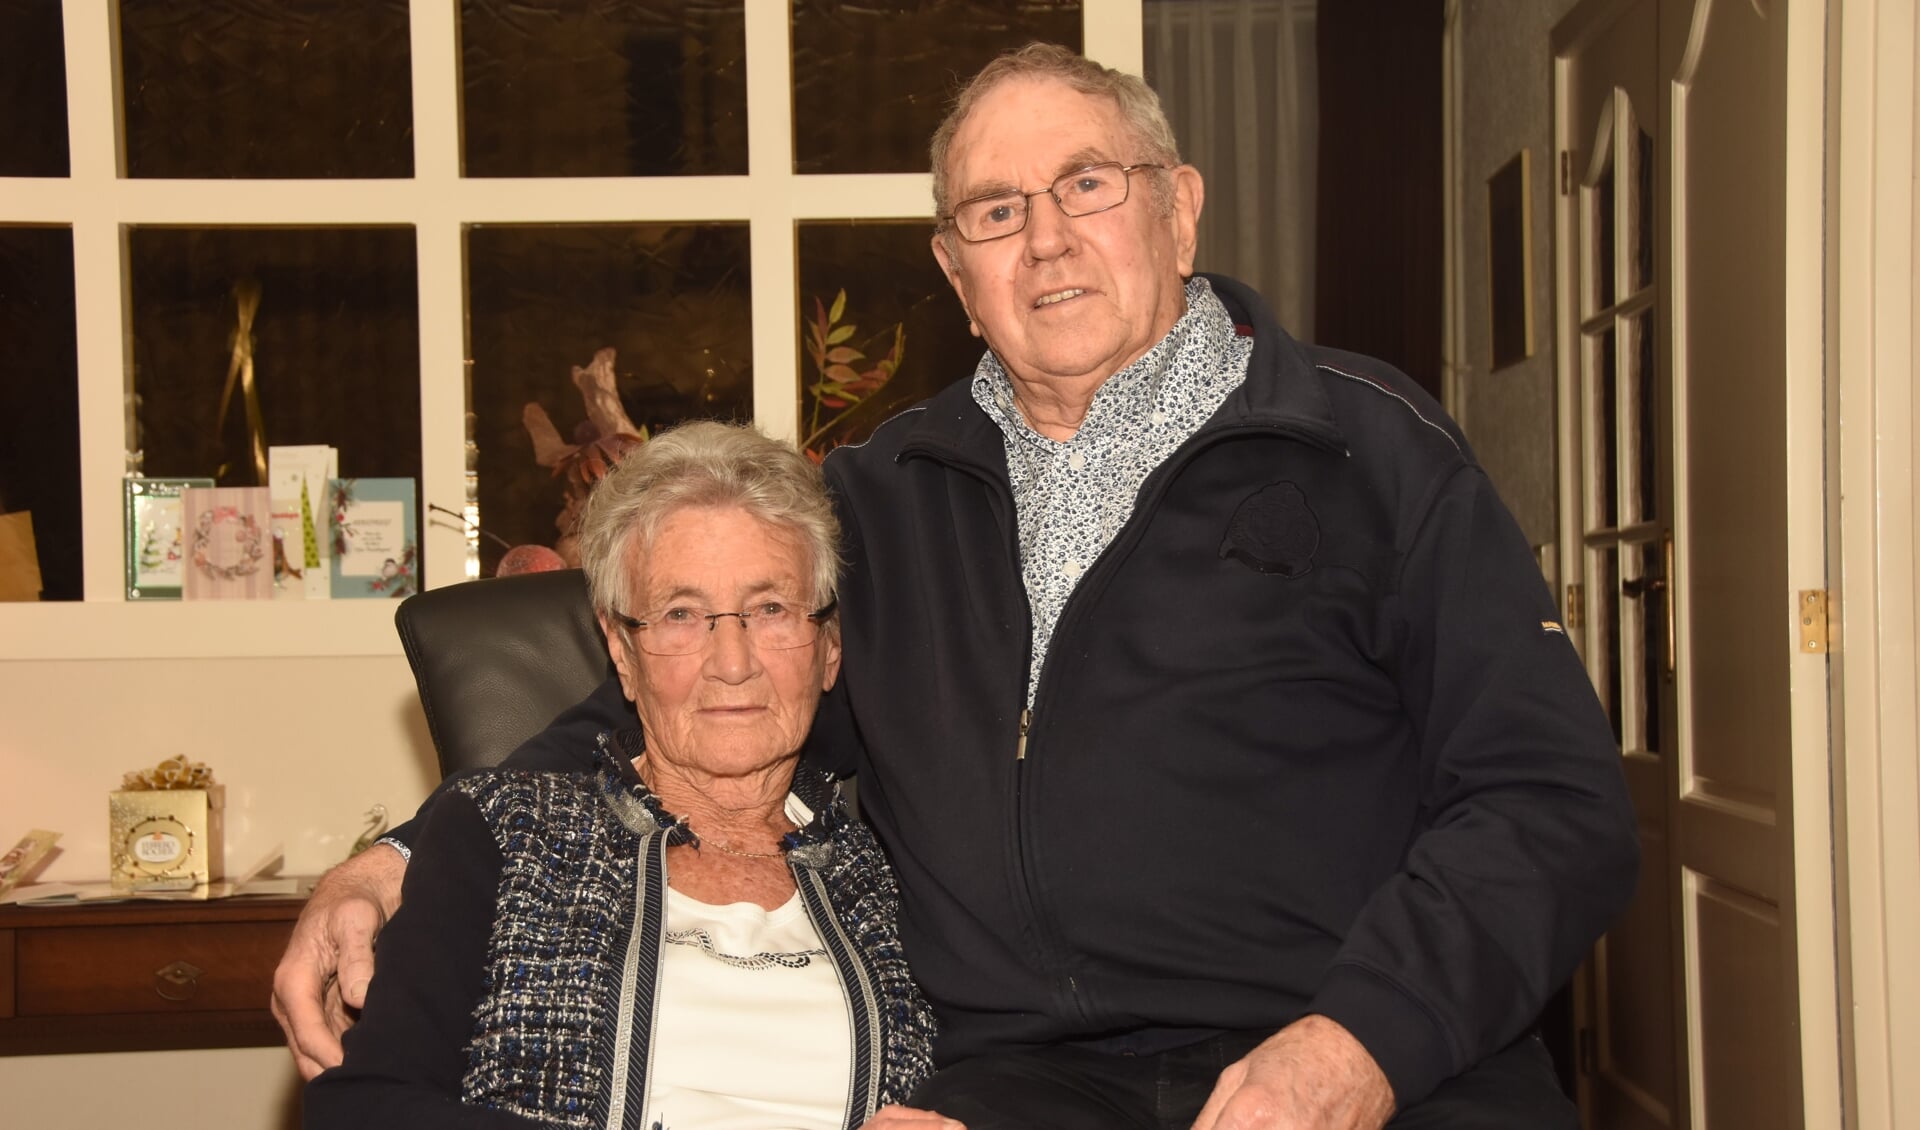 Dini en Jan Hulsen zijn op 27 december 60 jaar getrouwd